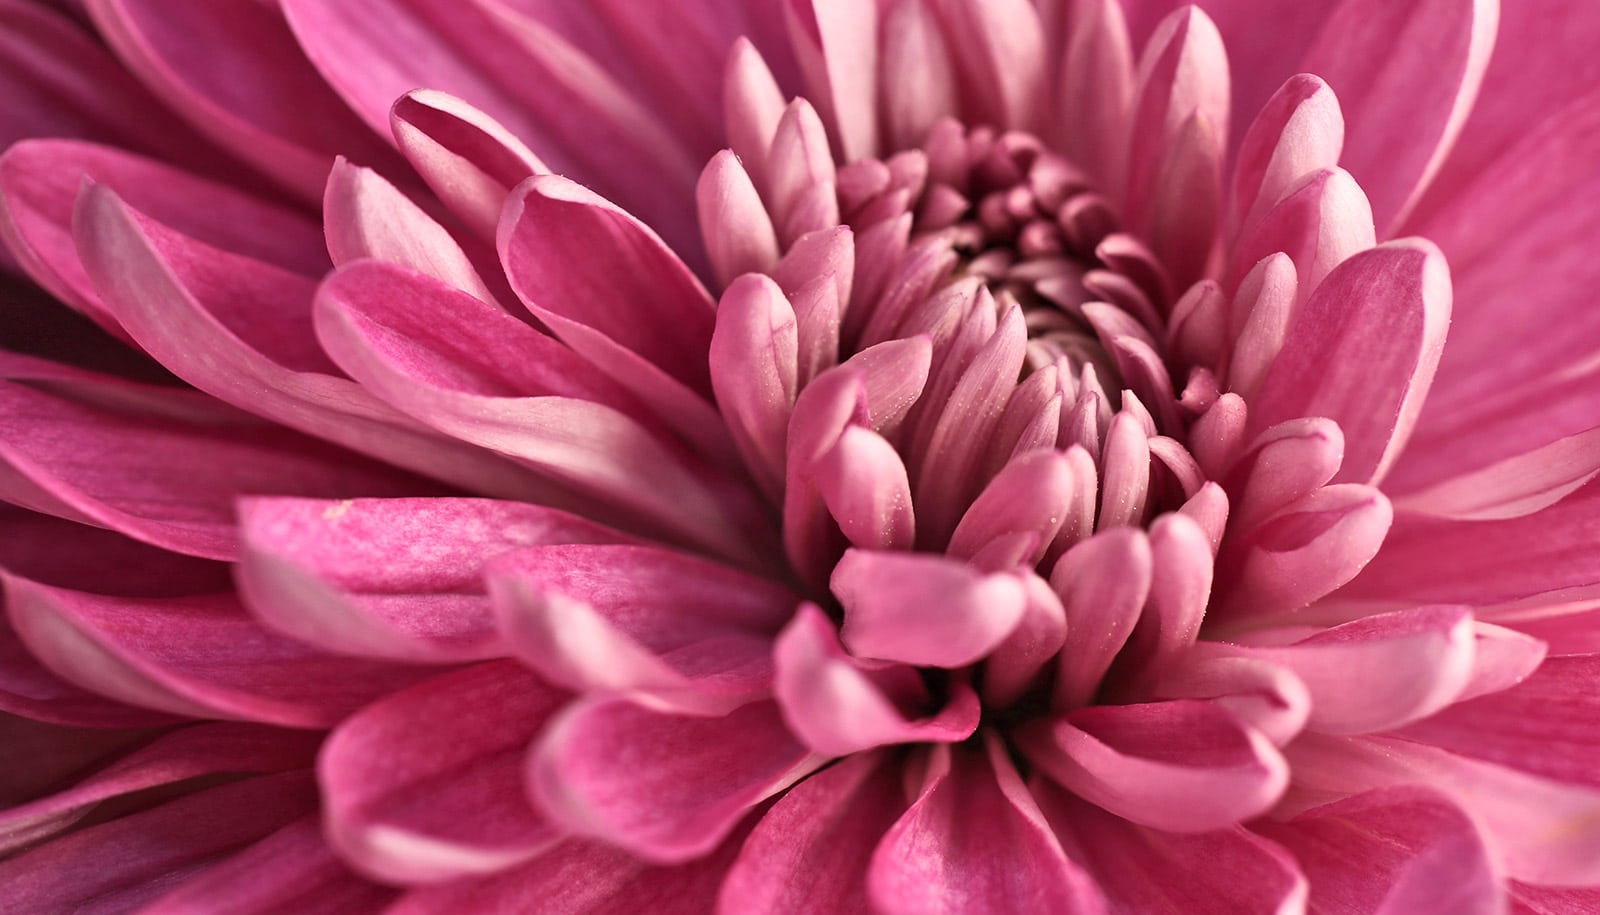 Eine rosa Blume, die in Nahaufnahme gezeigt wird.